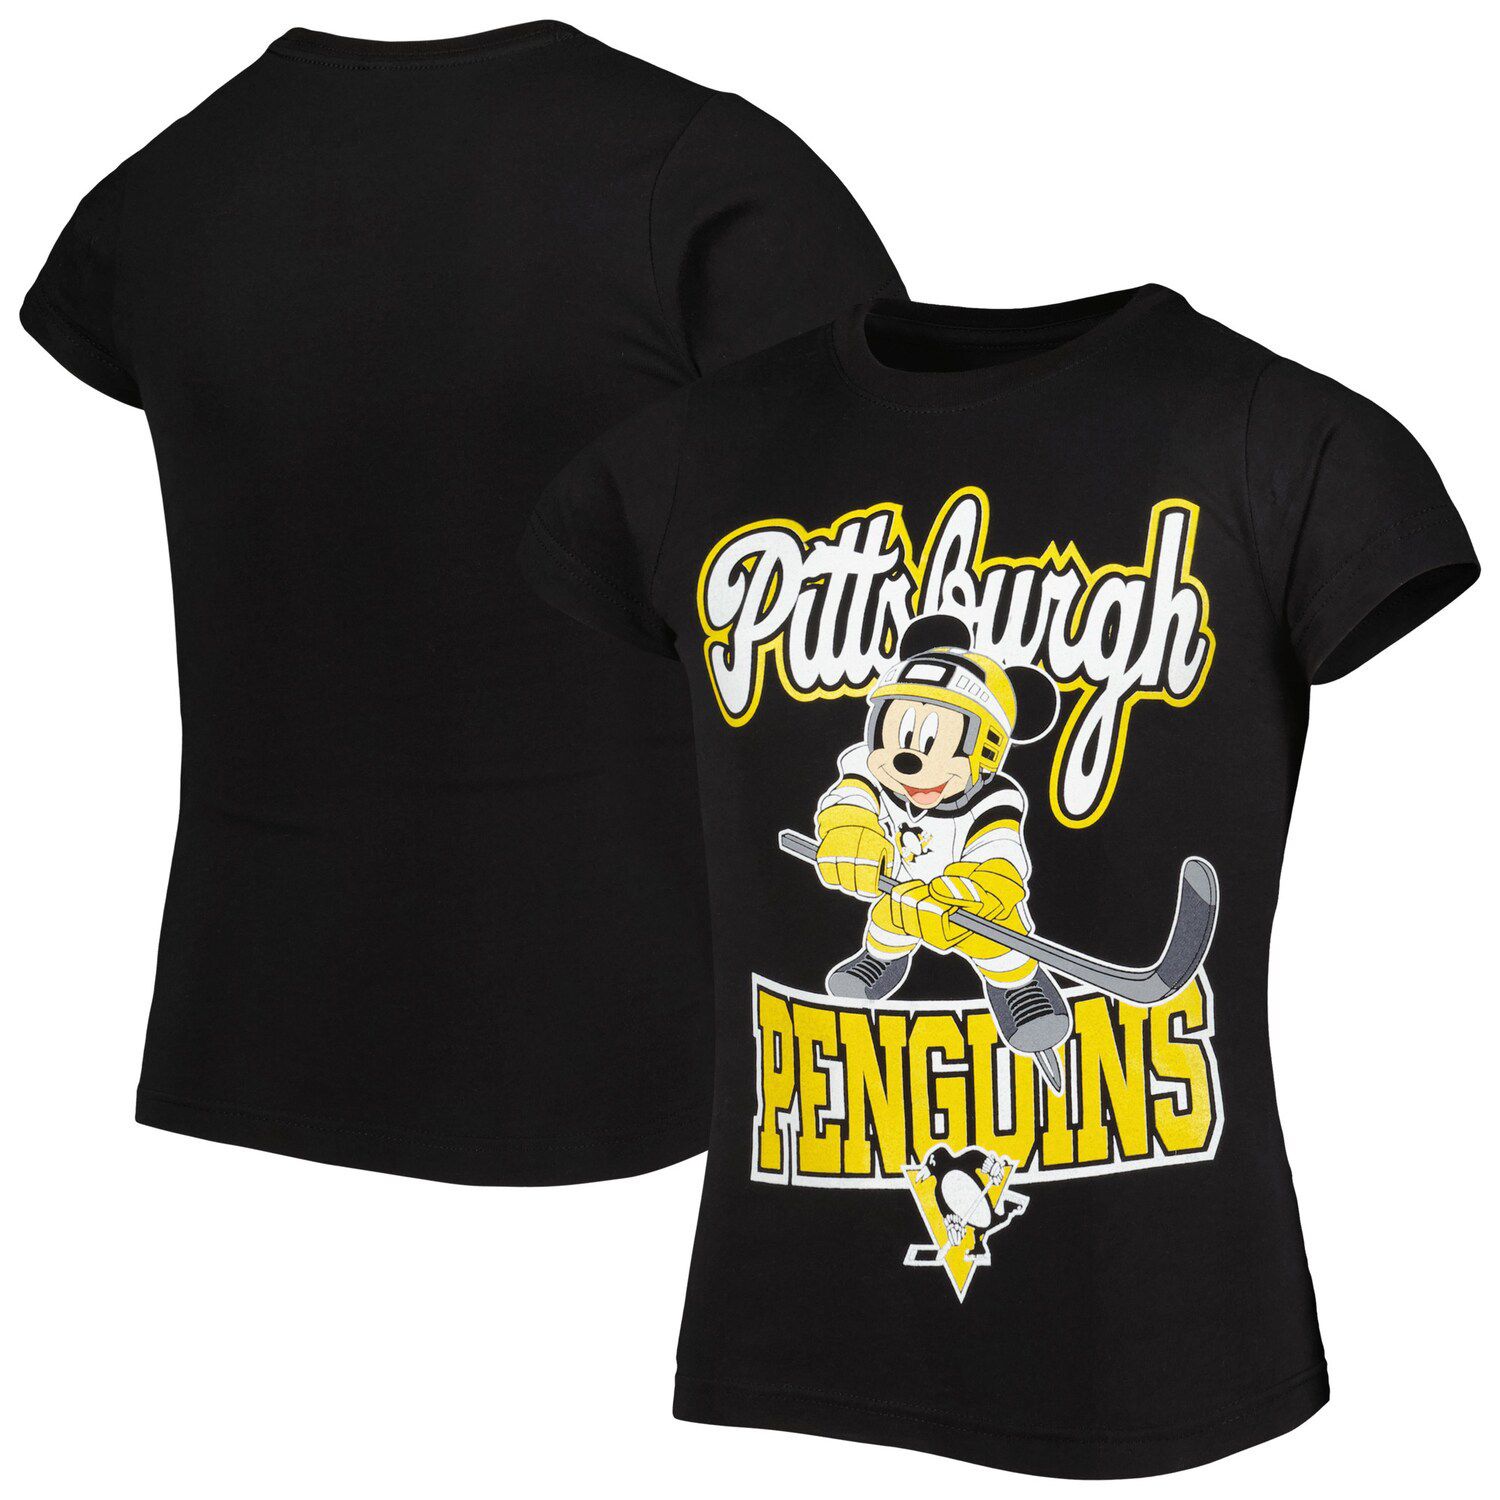 Молодежная черная футболка Pittsburgh Penguins с Микки Маусом Go Team Go для девочек Outerstuff